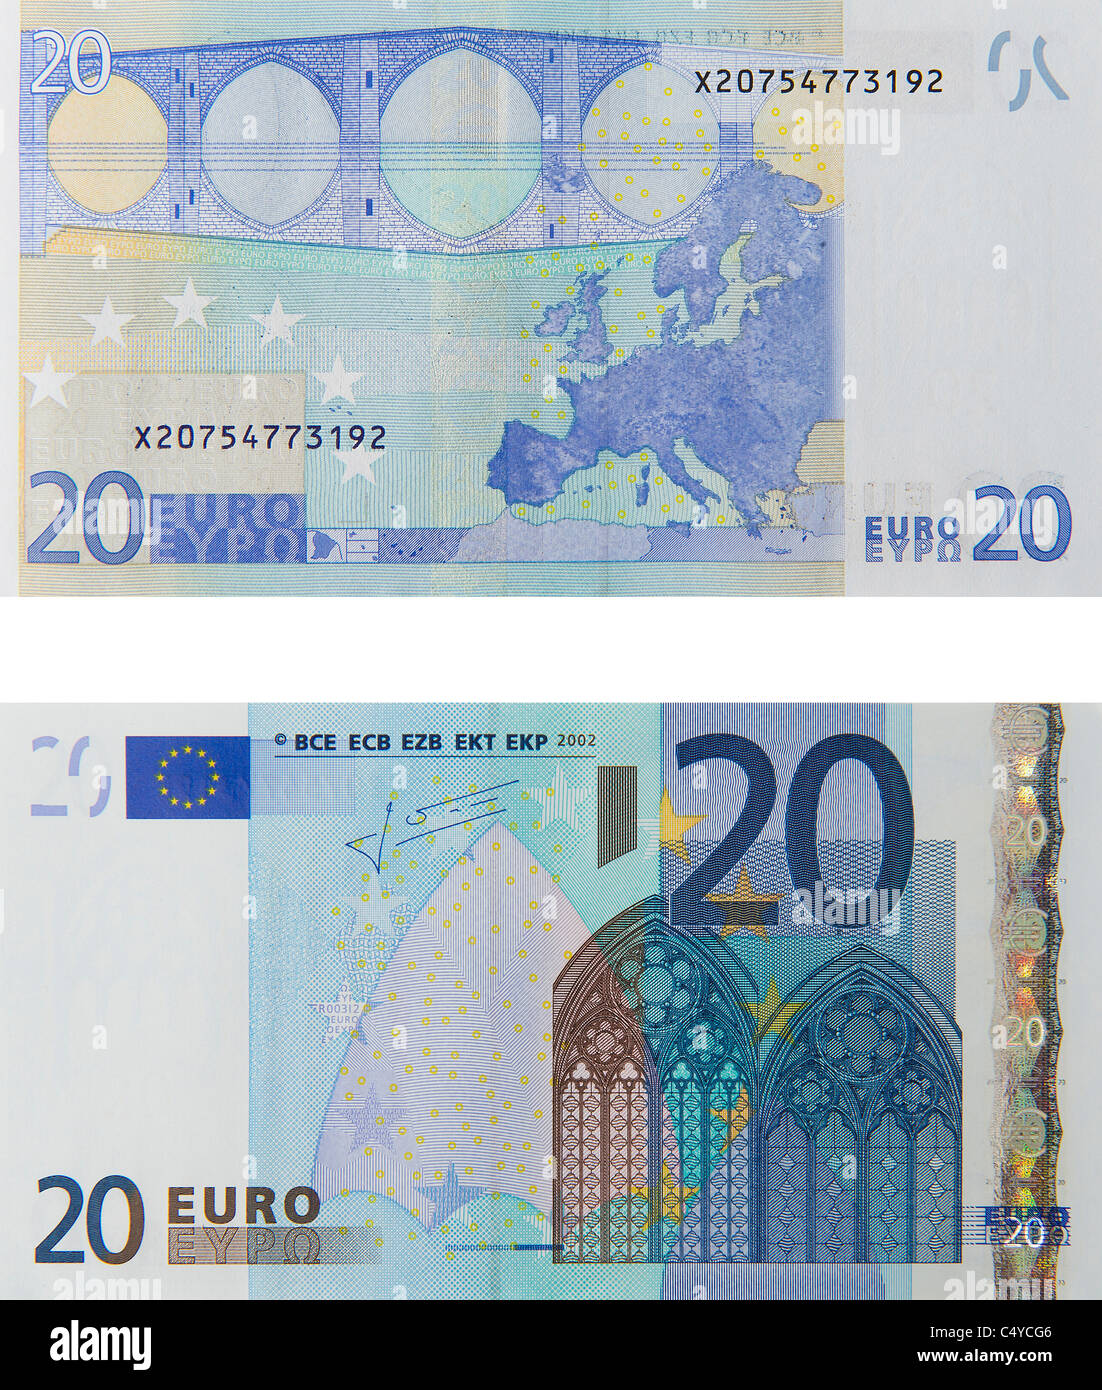 20 twenty euro note euros notes bill Stock Photo